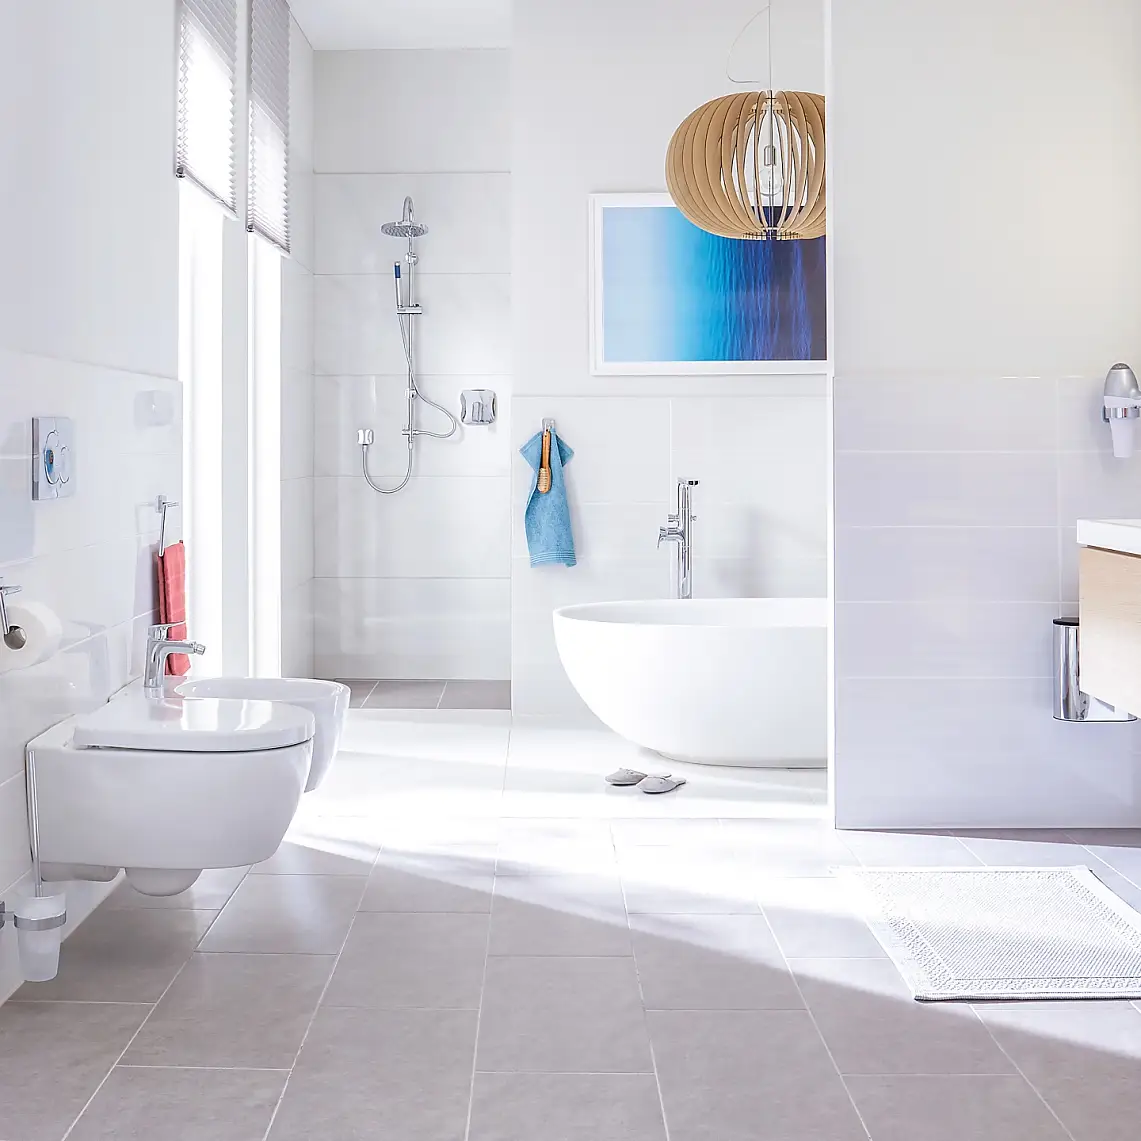 Design ontmoet perfecte elegantie voor luxe badkamers.